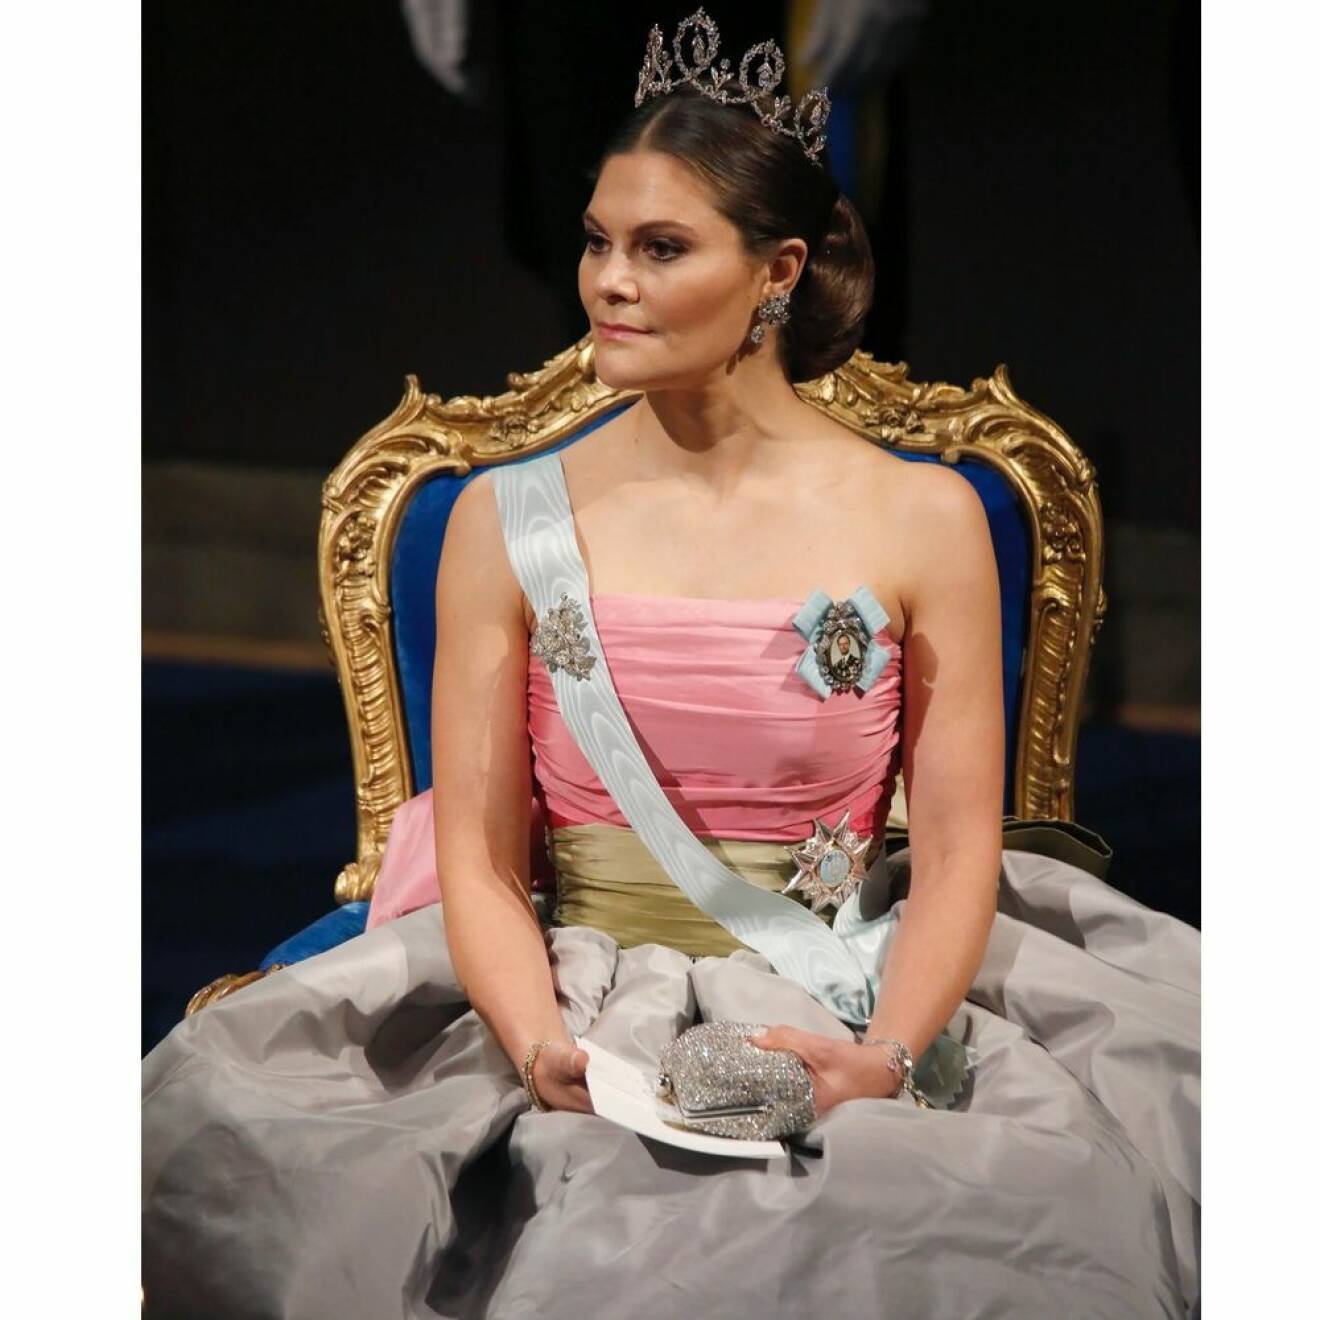 Kronprinsessan Victoria i drottning Silvias gamla Nobelklänning